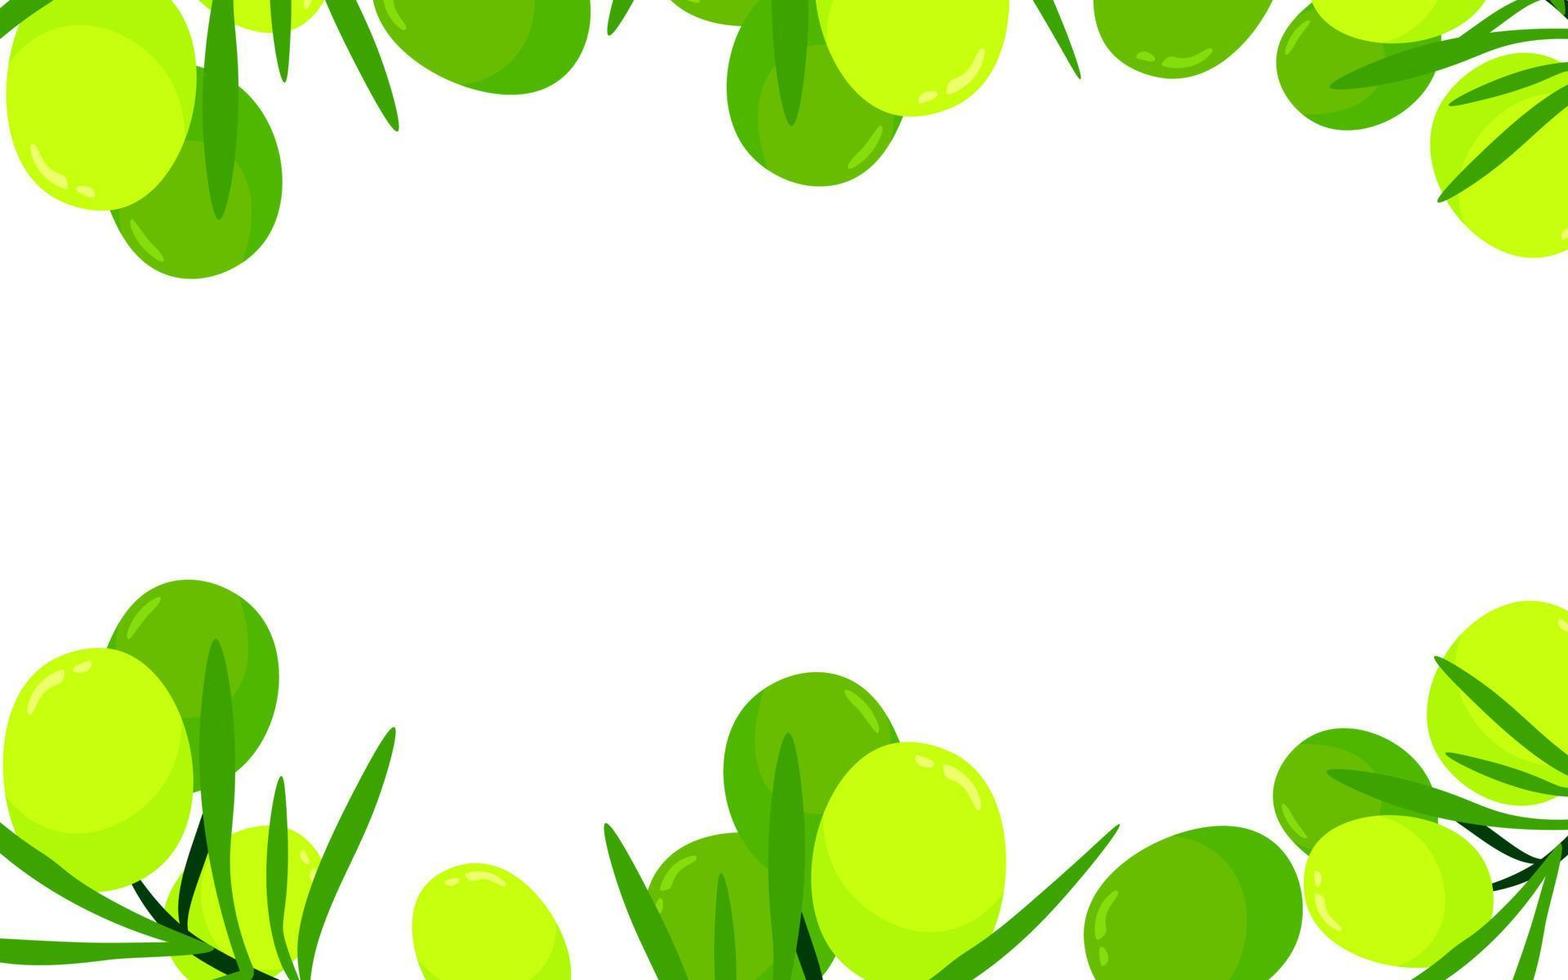 groene olijven fruit en takken cartoon afbeelding geïsoleerd op een witte achtergrond. vector kleurrijke verse biologische gezonde voeding concept. logo branding bannerontwerp. grens kader.